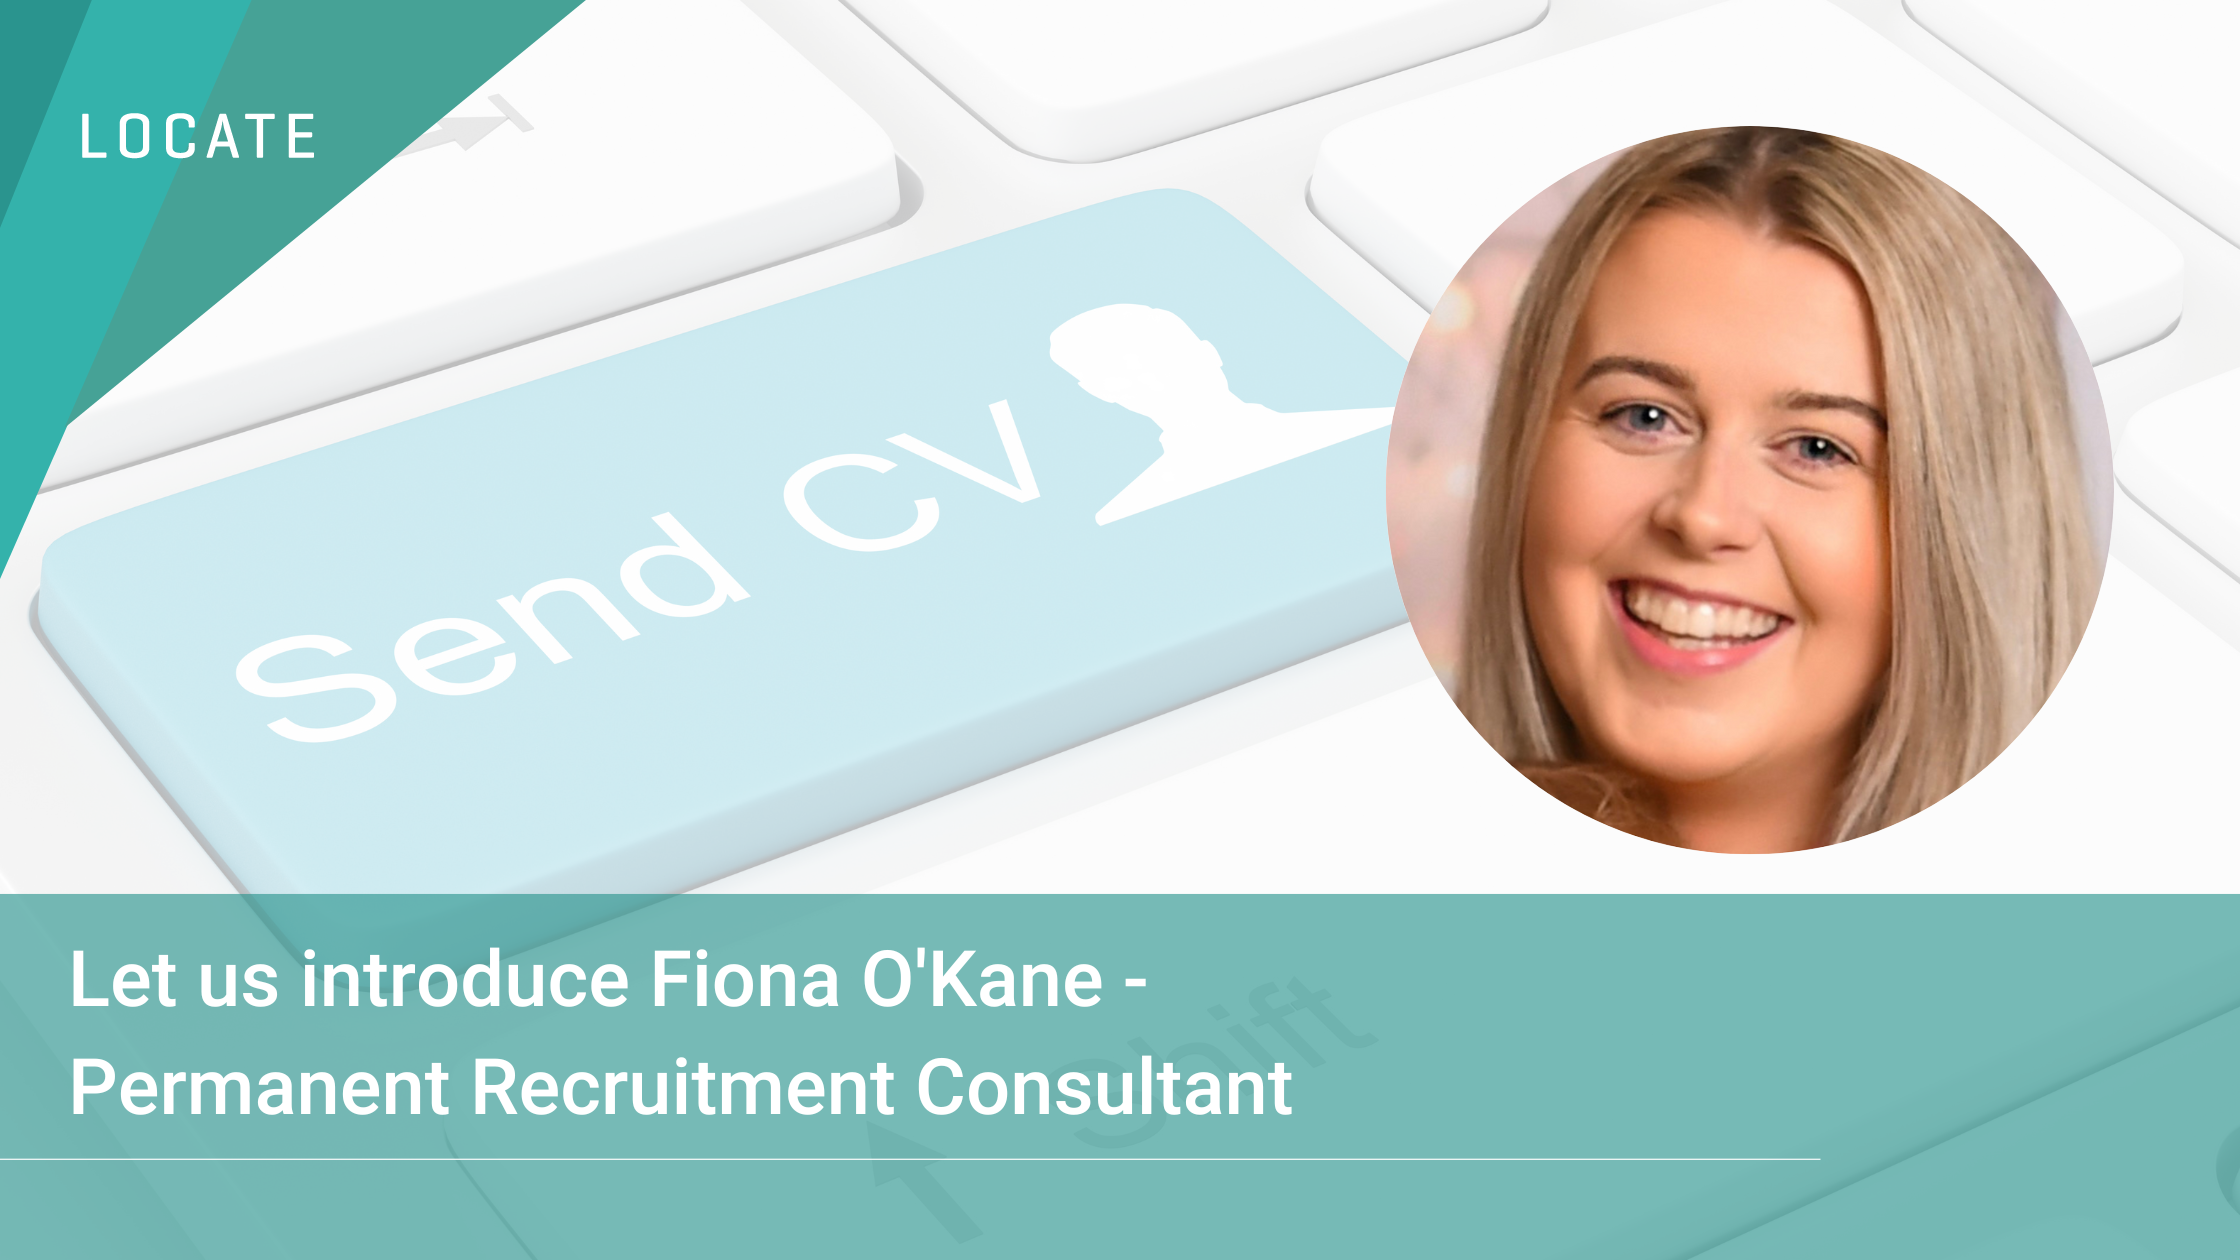 meet-fiona-okane-locates-permanent-recruitment-consultant